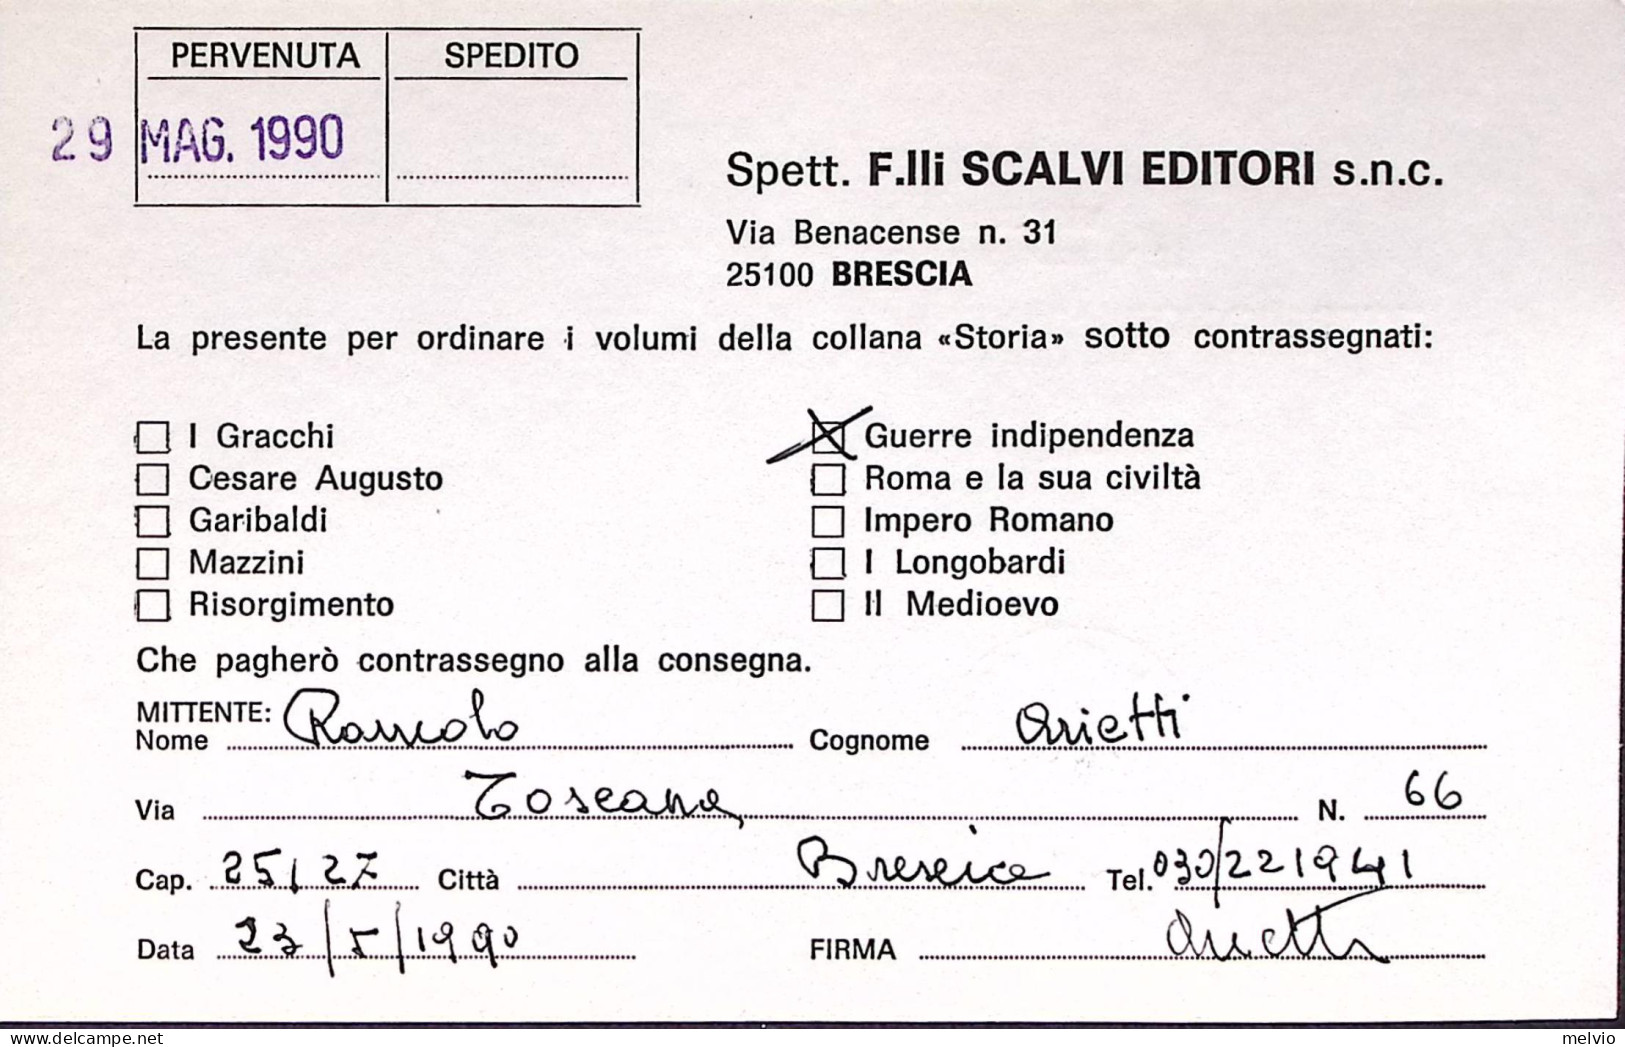 1990-MONDIALI CALCIO Lire 450 Austria Isolato Su Cedola Commissione Libraria - 1981-90: Marcophilia